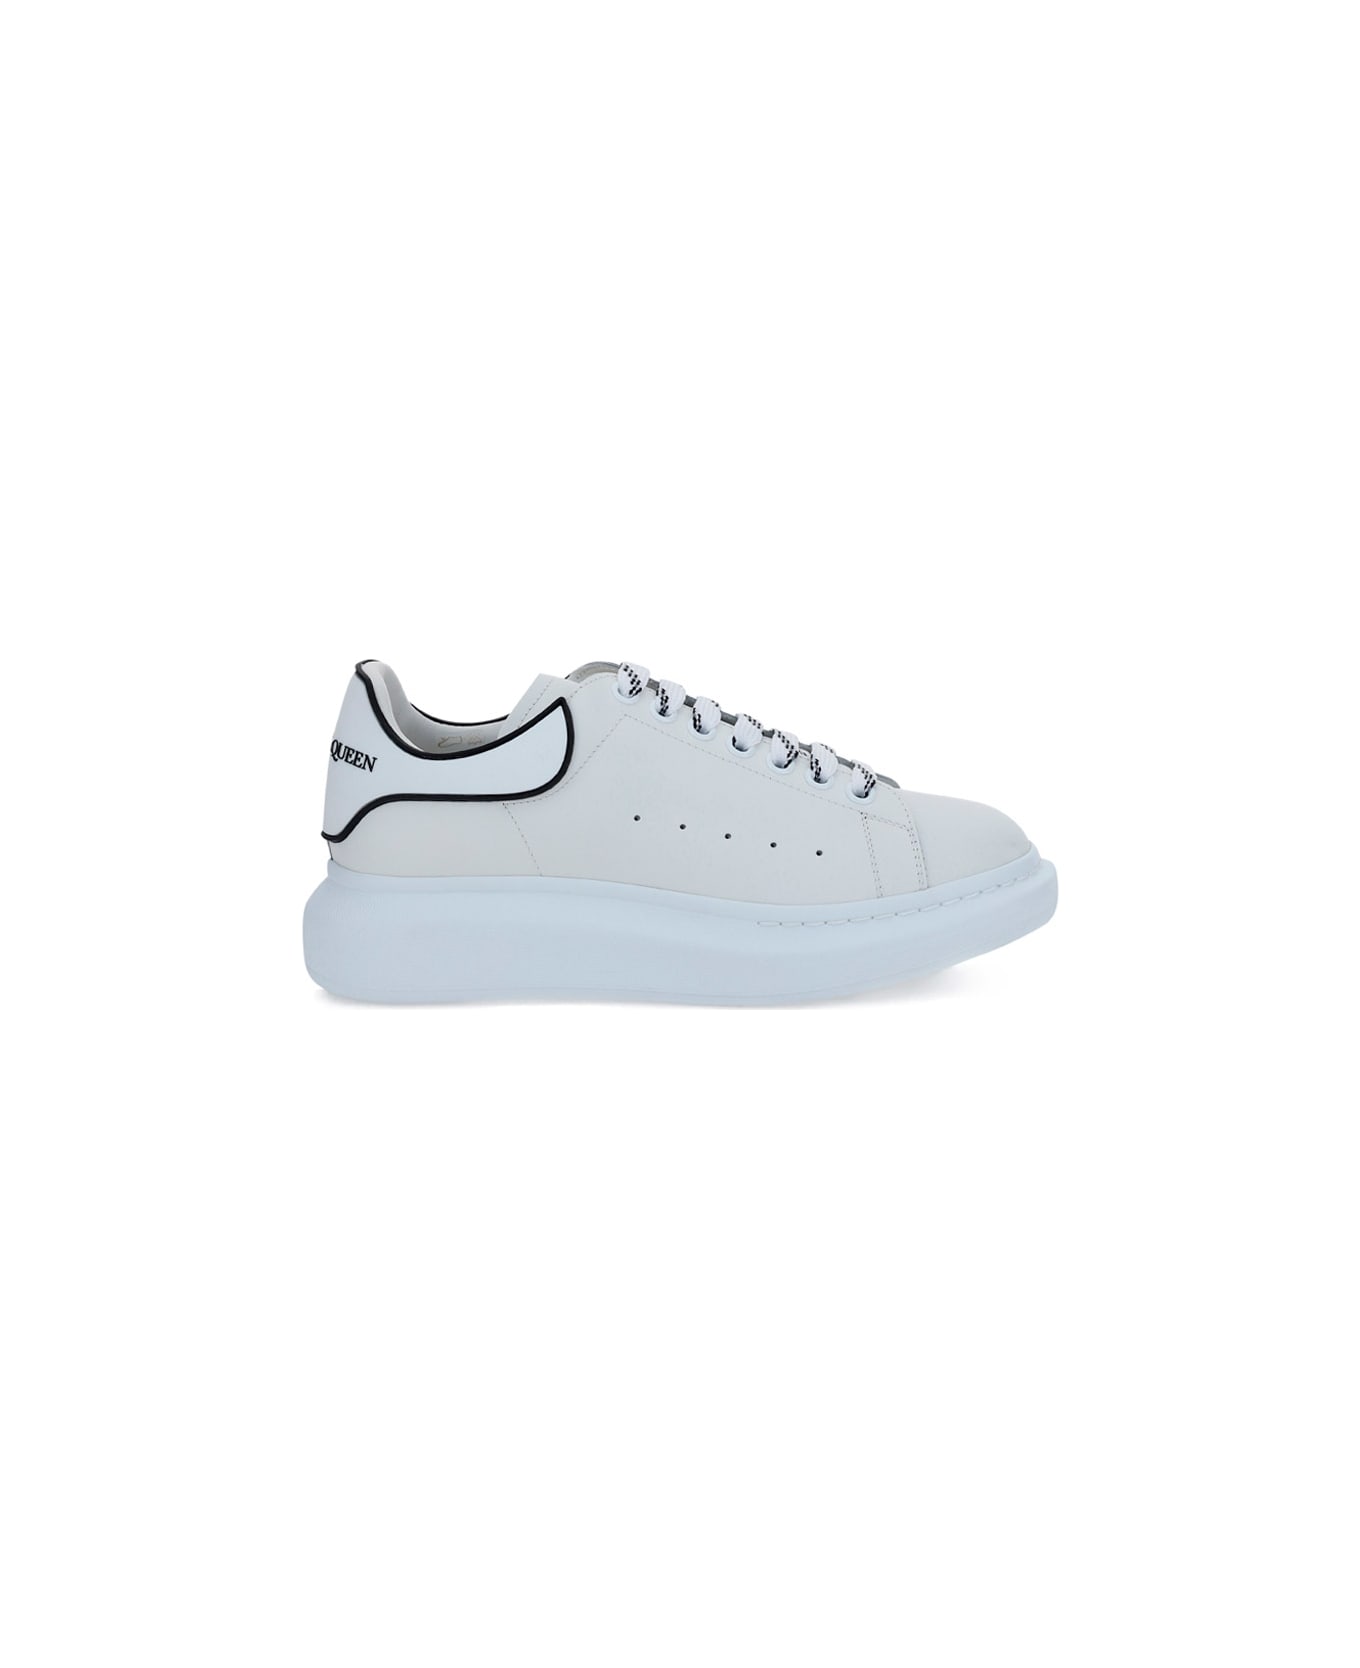 Alexander McQueen Sneakers - White/white/black スニーカー